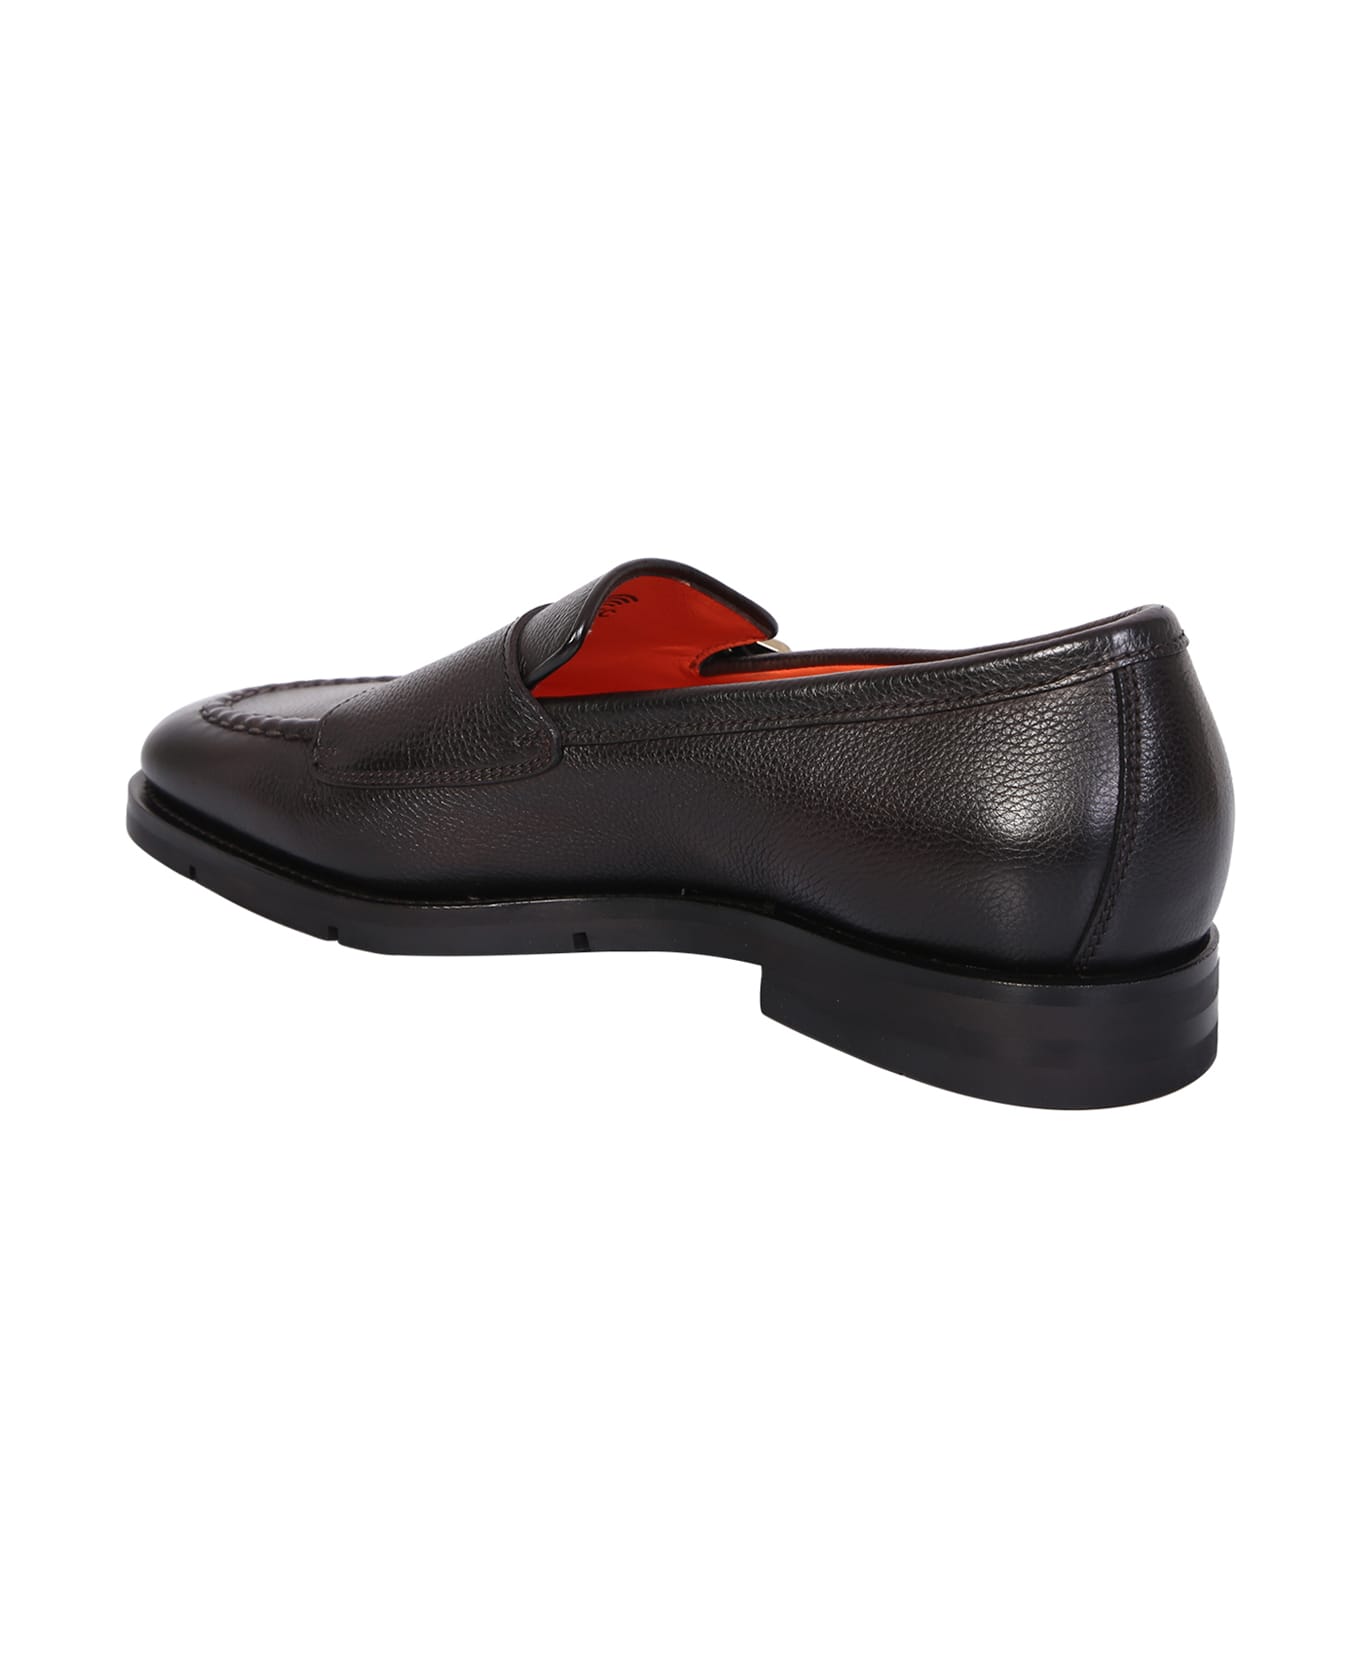 Santoni Double Strap Monk Shoes Brown - Brown